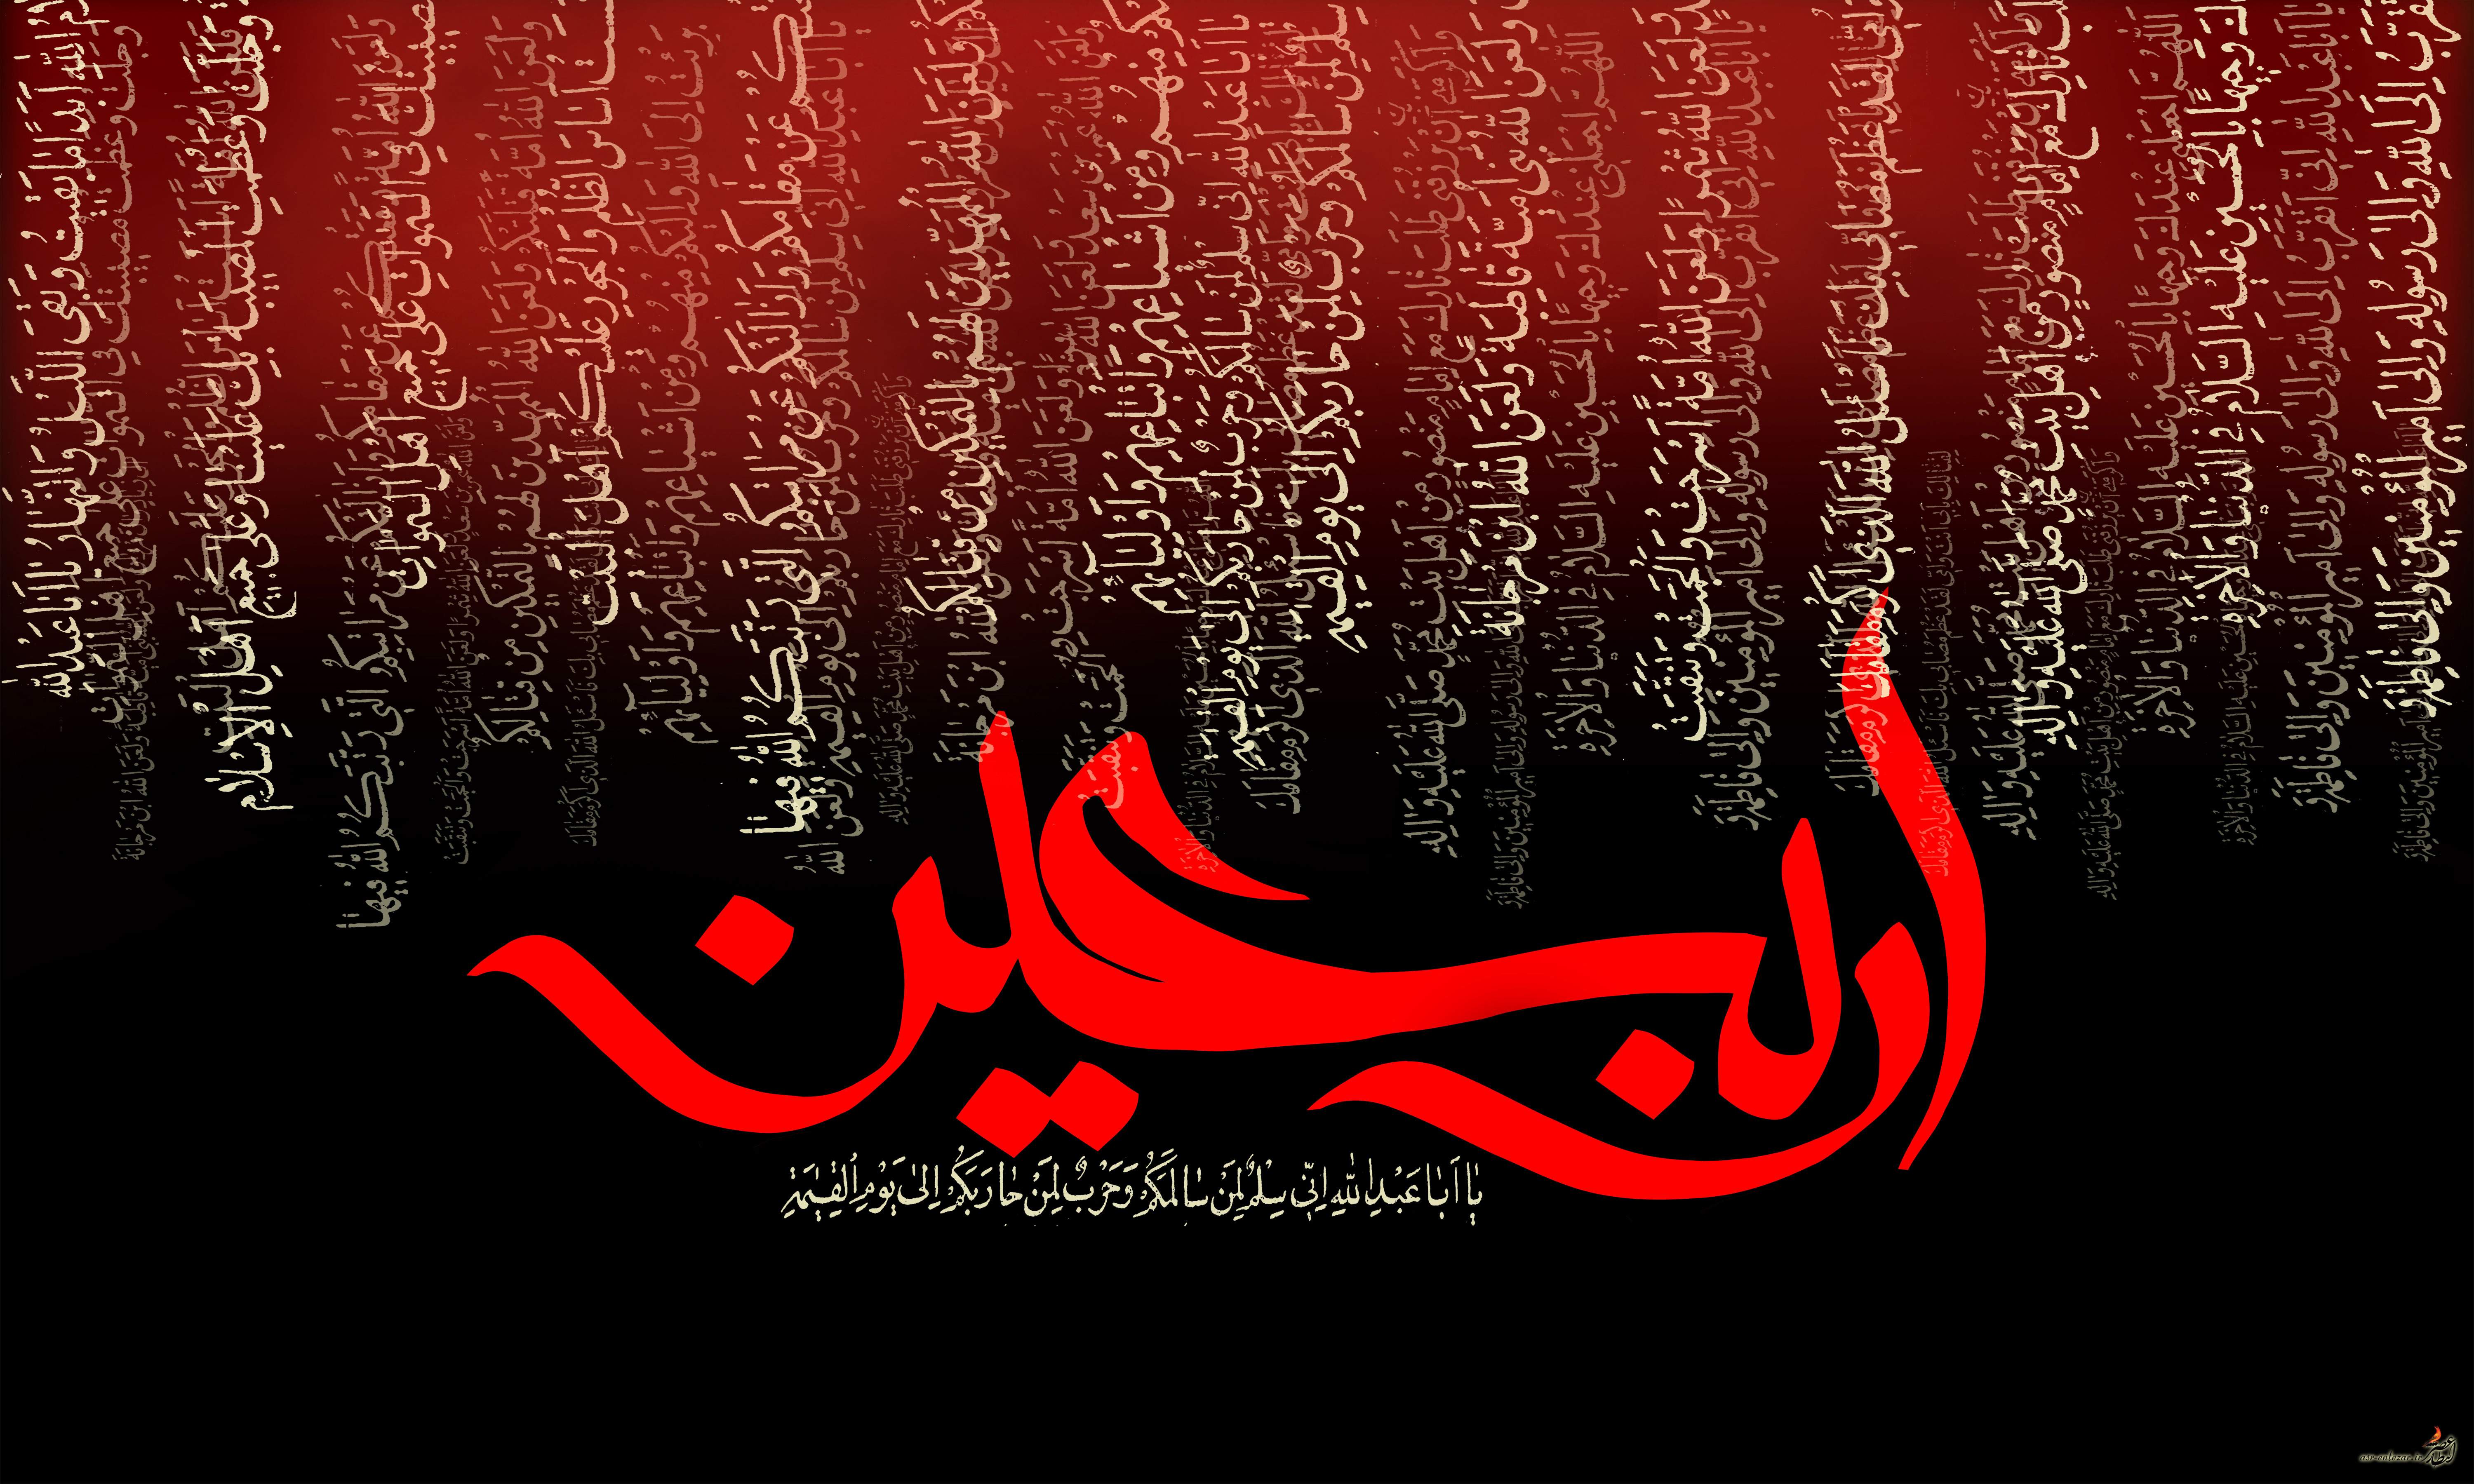 اشعار ویژه اربعین حسینی برای استفاده ذاکران اهل بیت